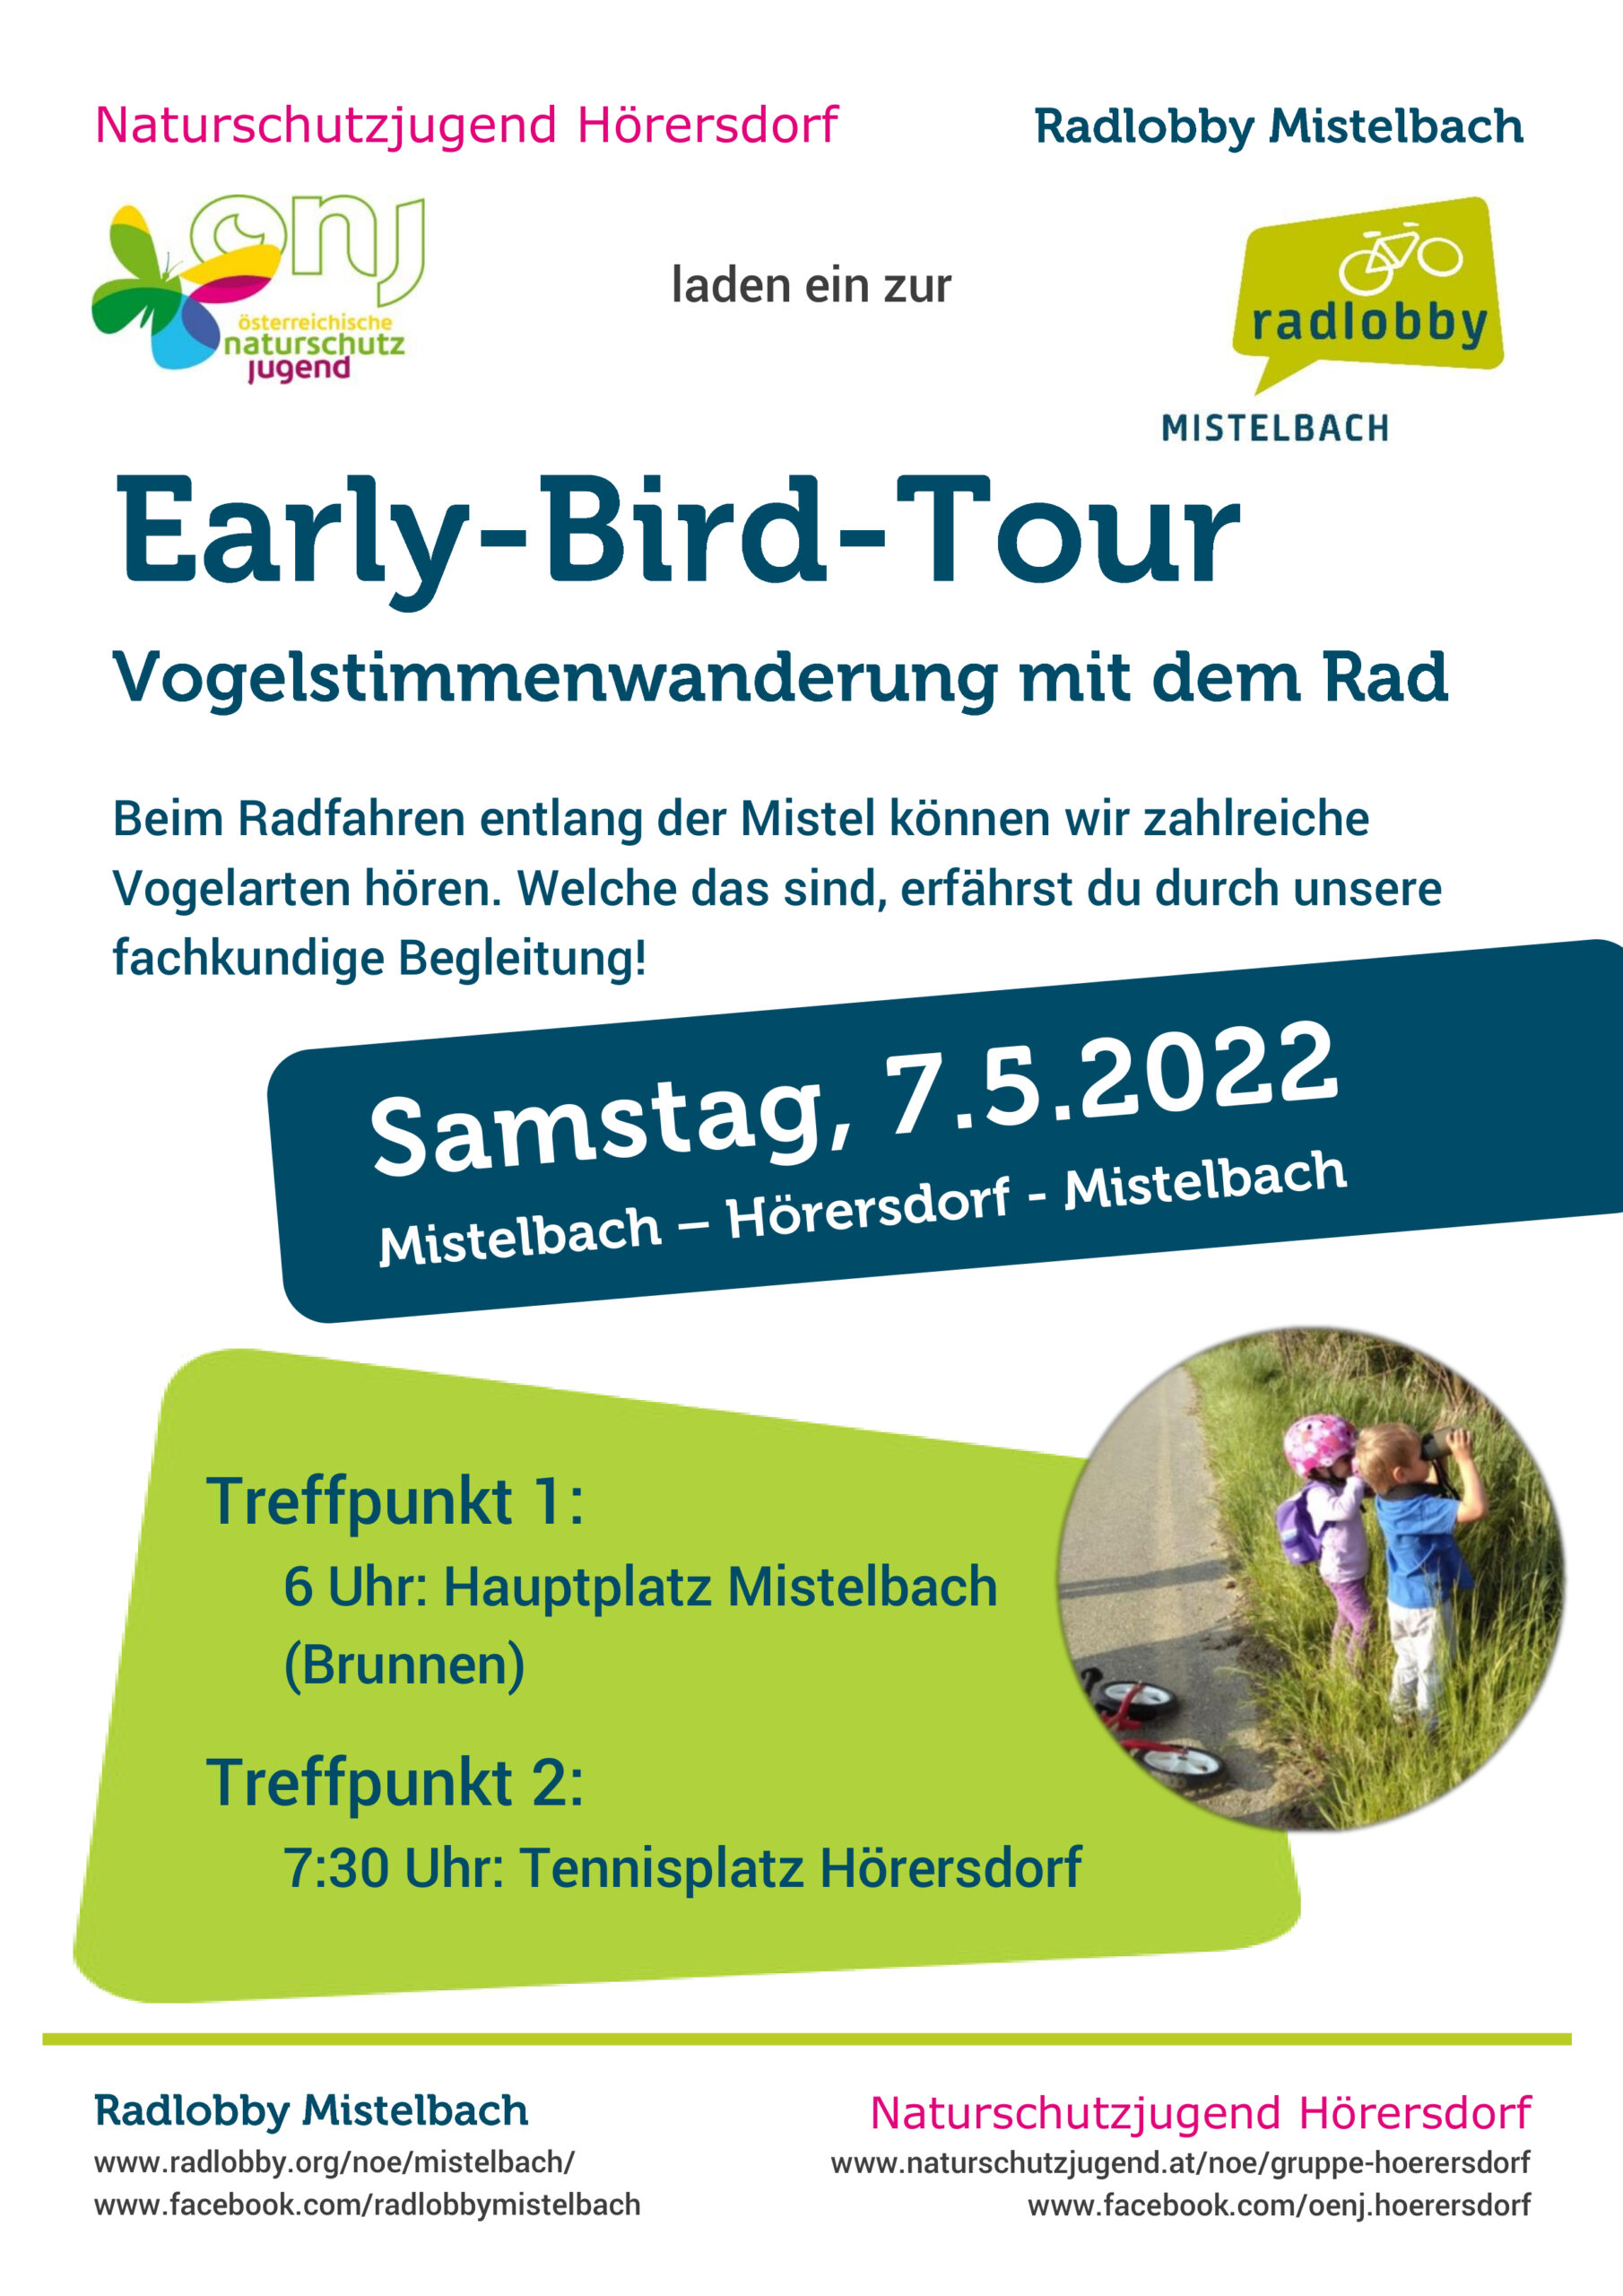 Early-Bird-Tour Mistelbach